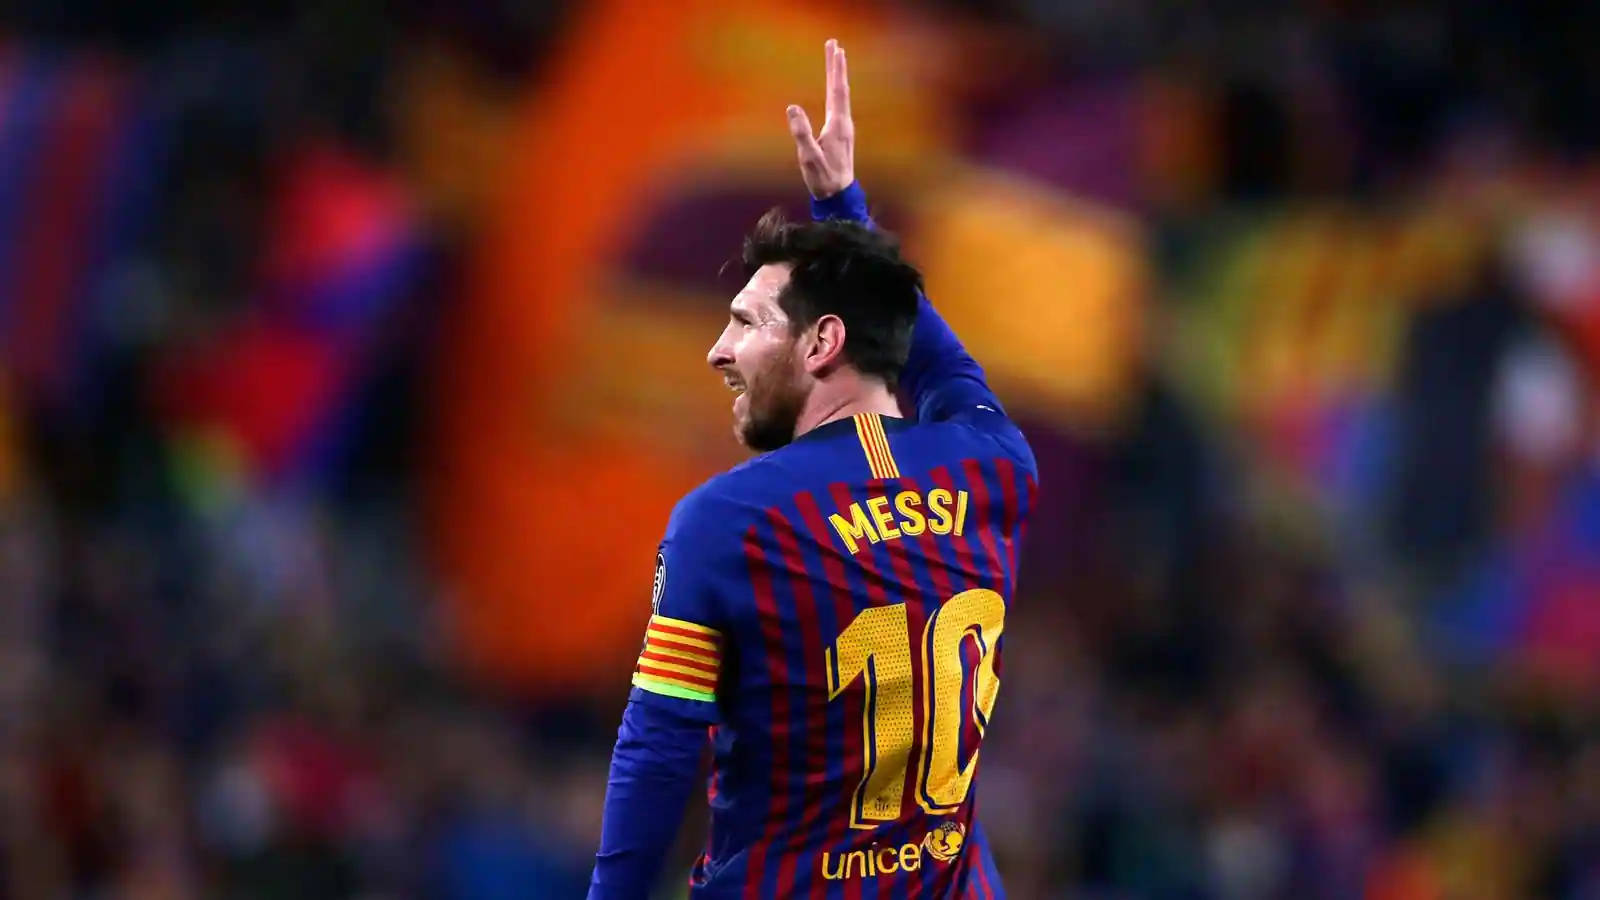 Messi 2021 Hånd Op Wallpaper